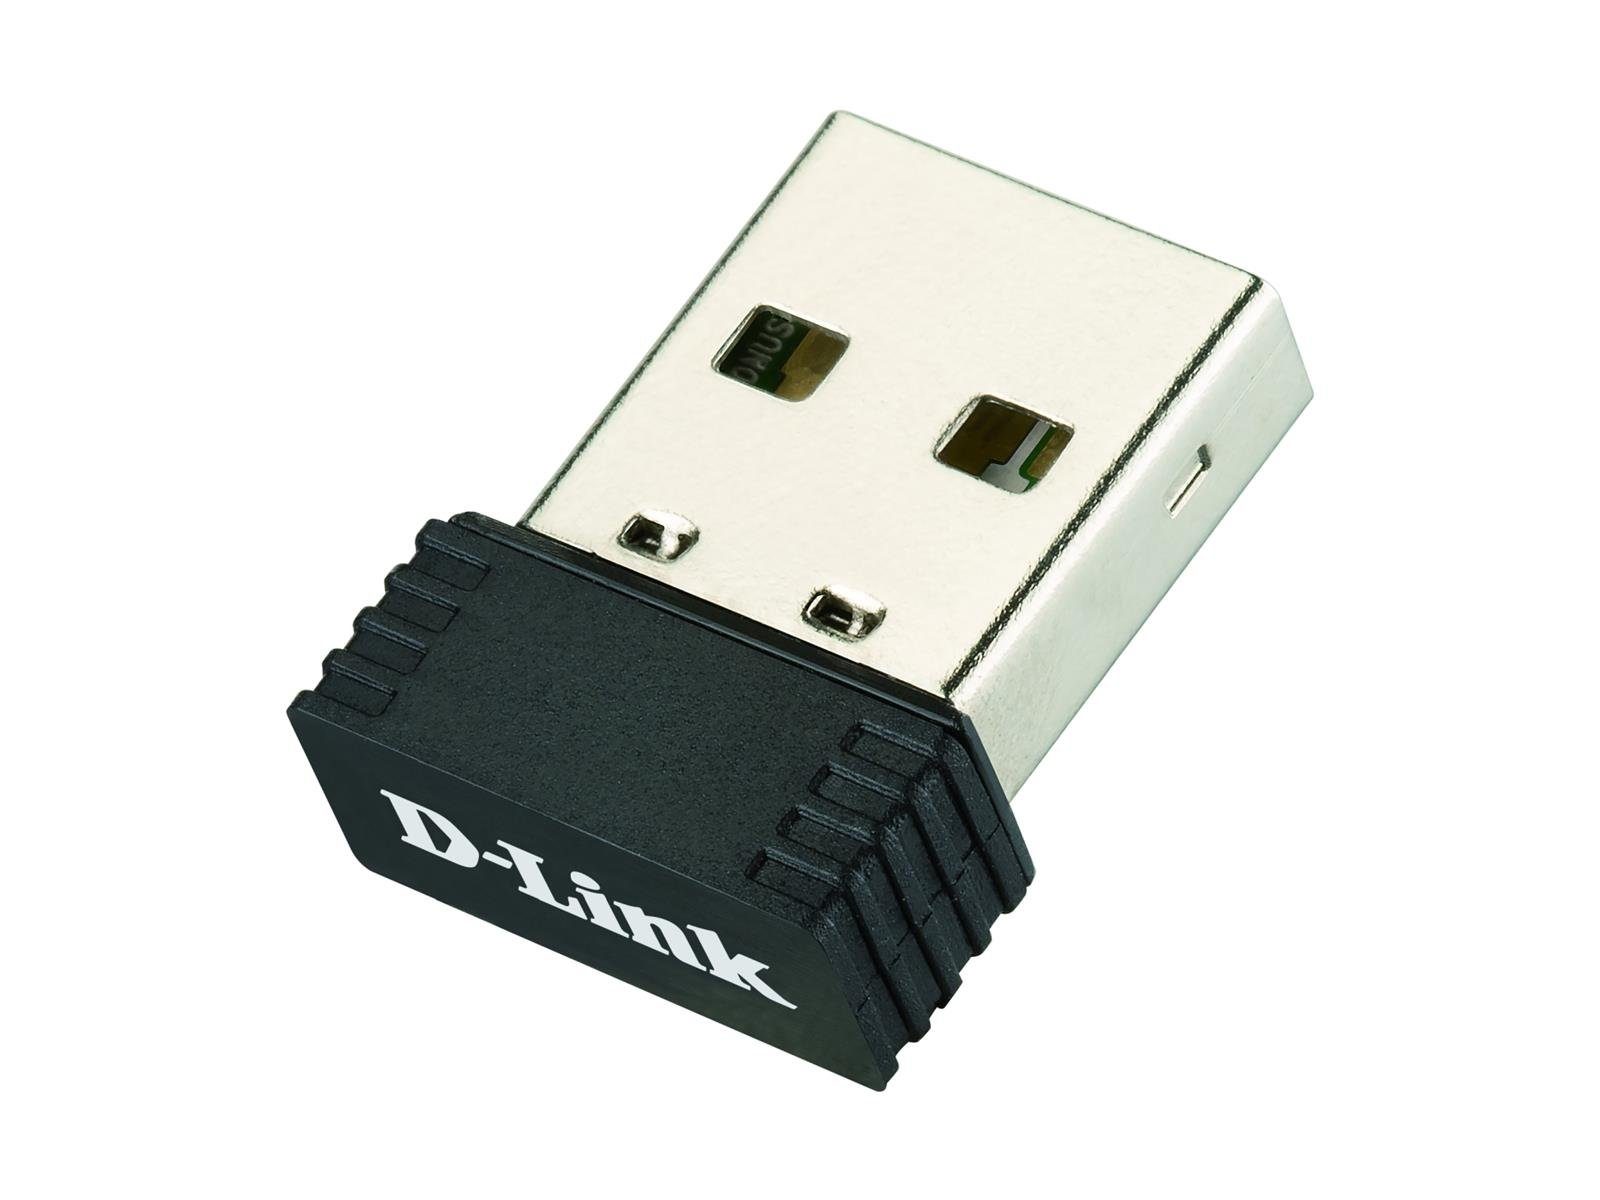 D-Link D-Link Wireless N 150 Micro USB Adapter Netzwerk-Adapter